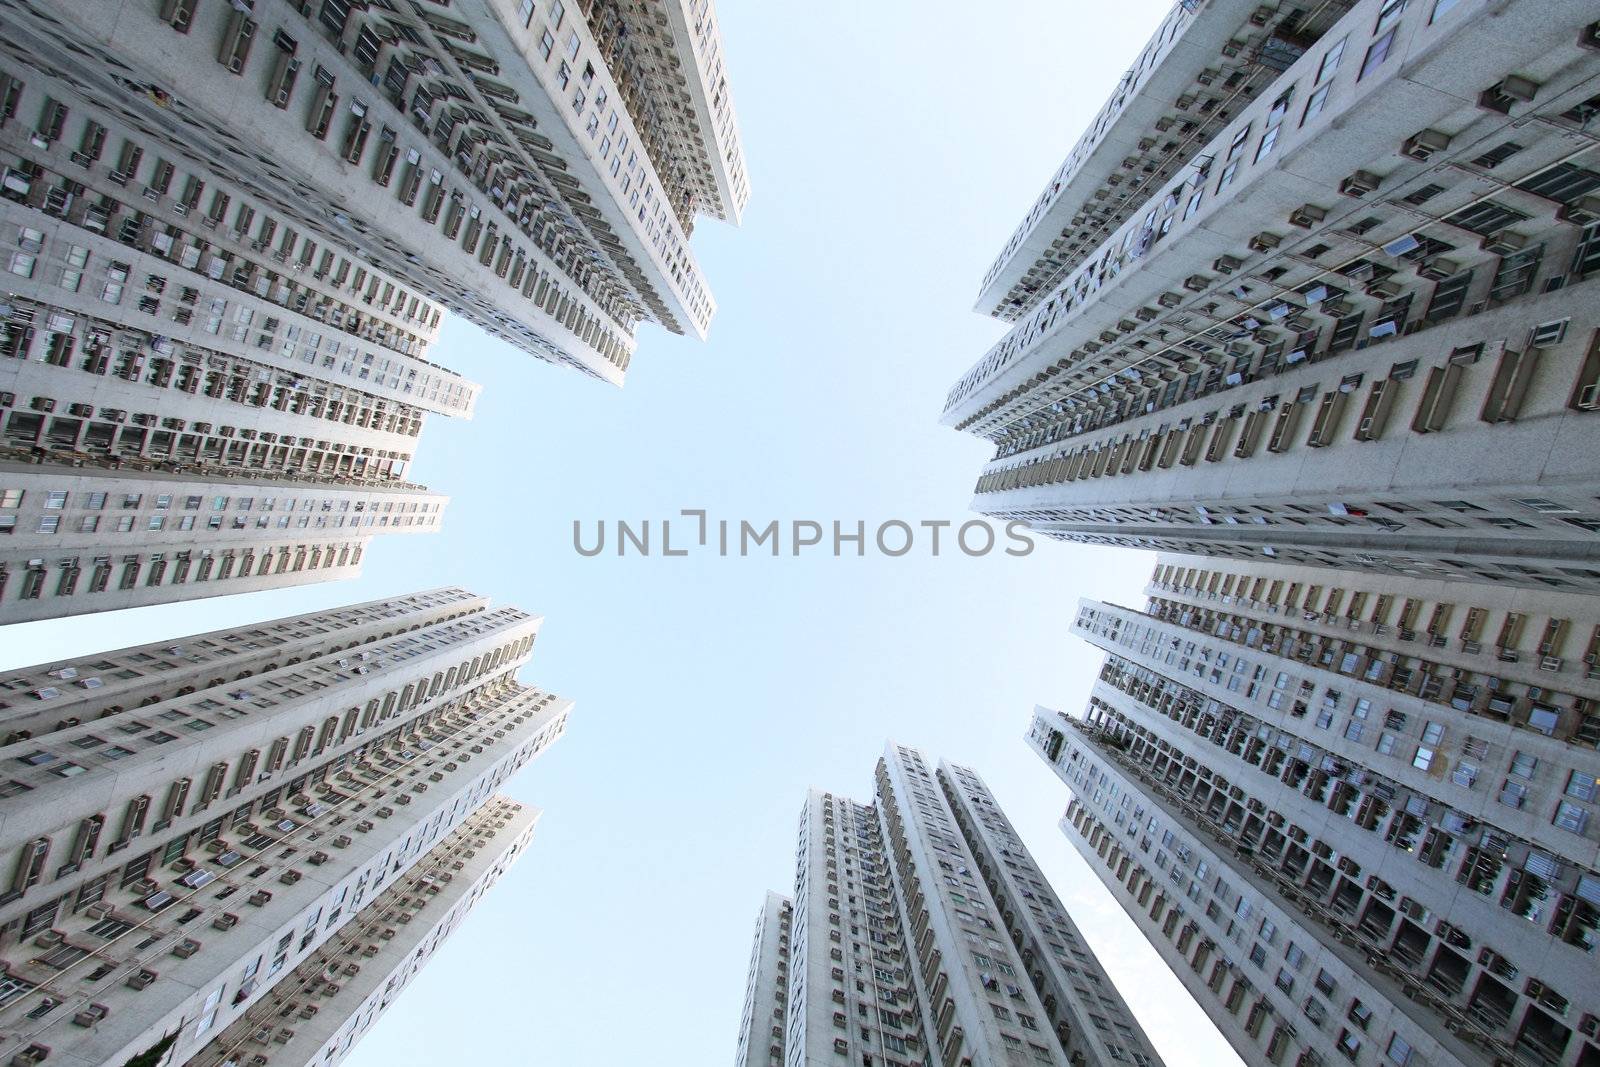 Hong Kong apartment blocks by kawing921